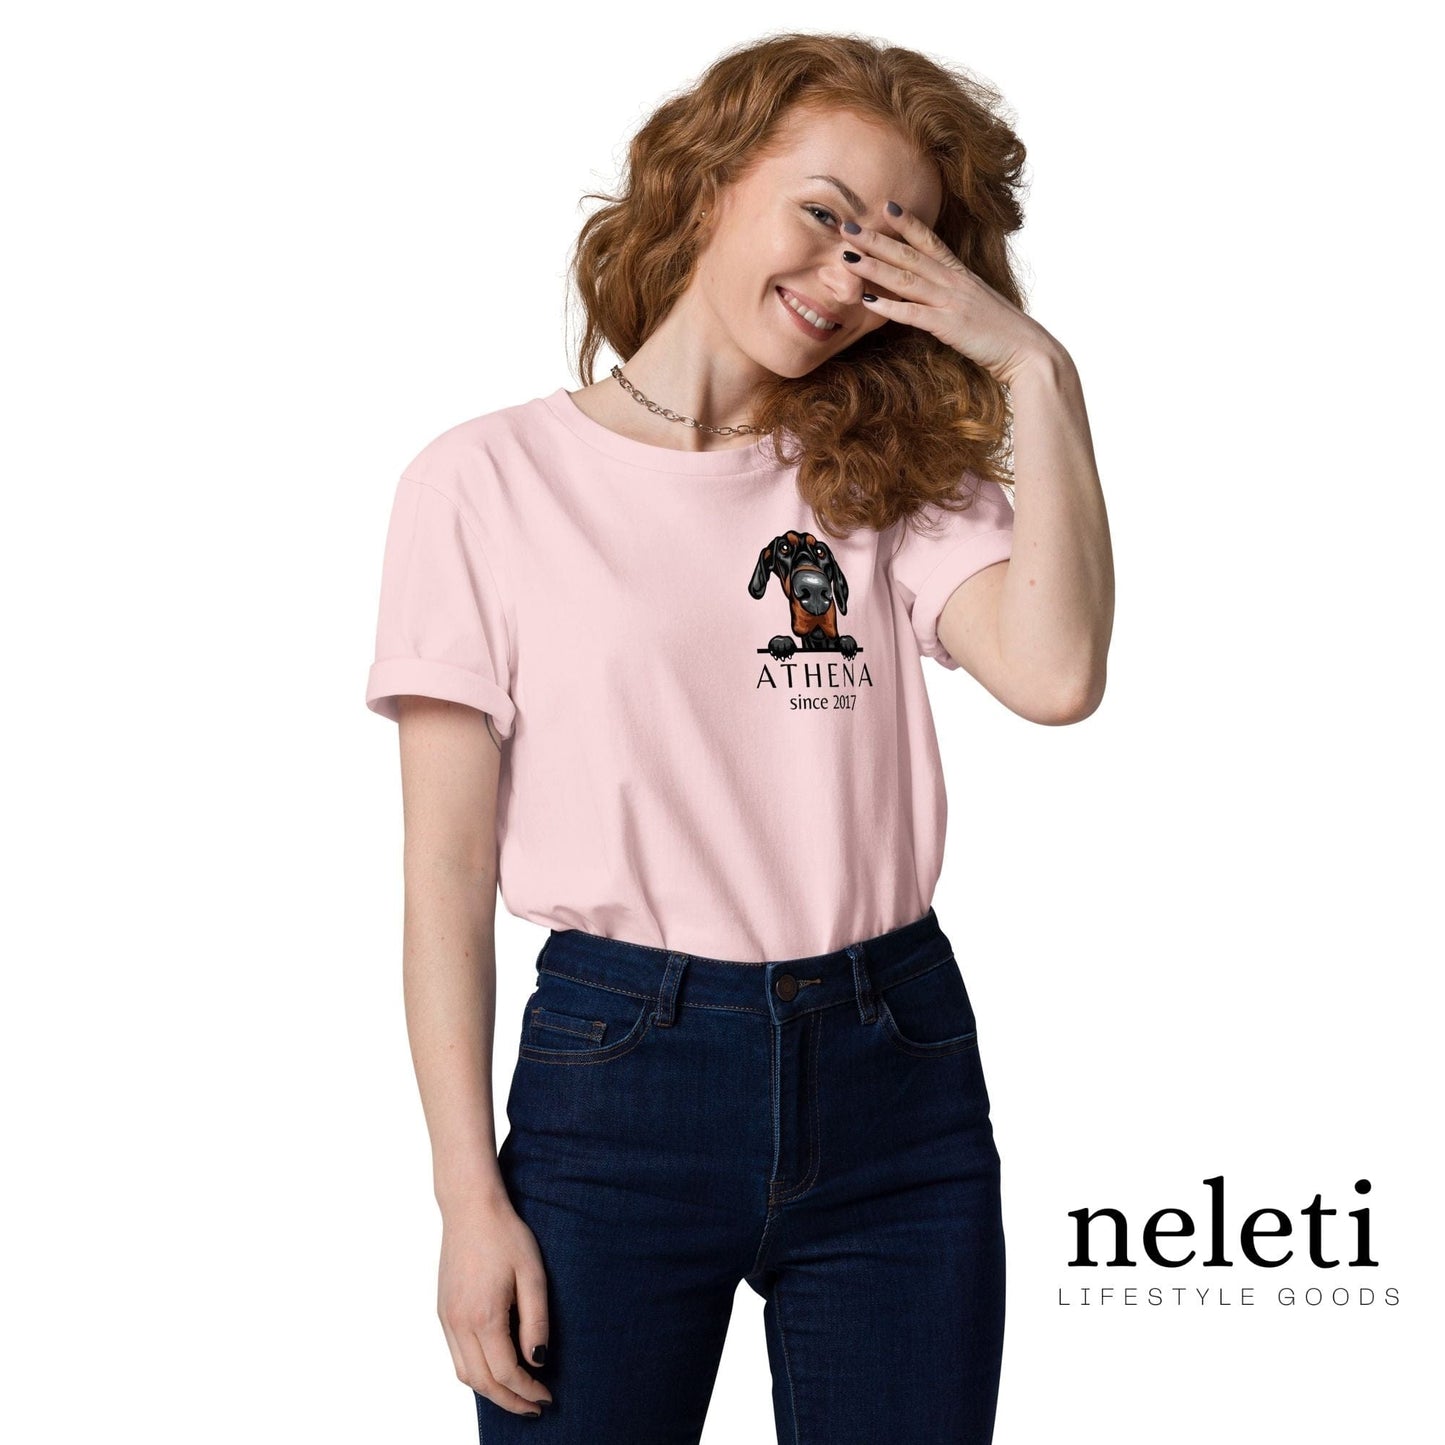 neleti.com-custom-cotton-pink-shirt-for-dog-dad